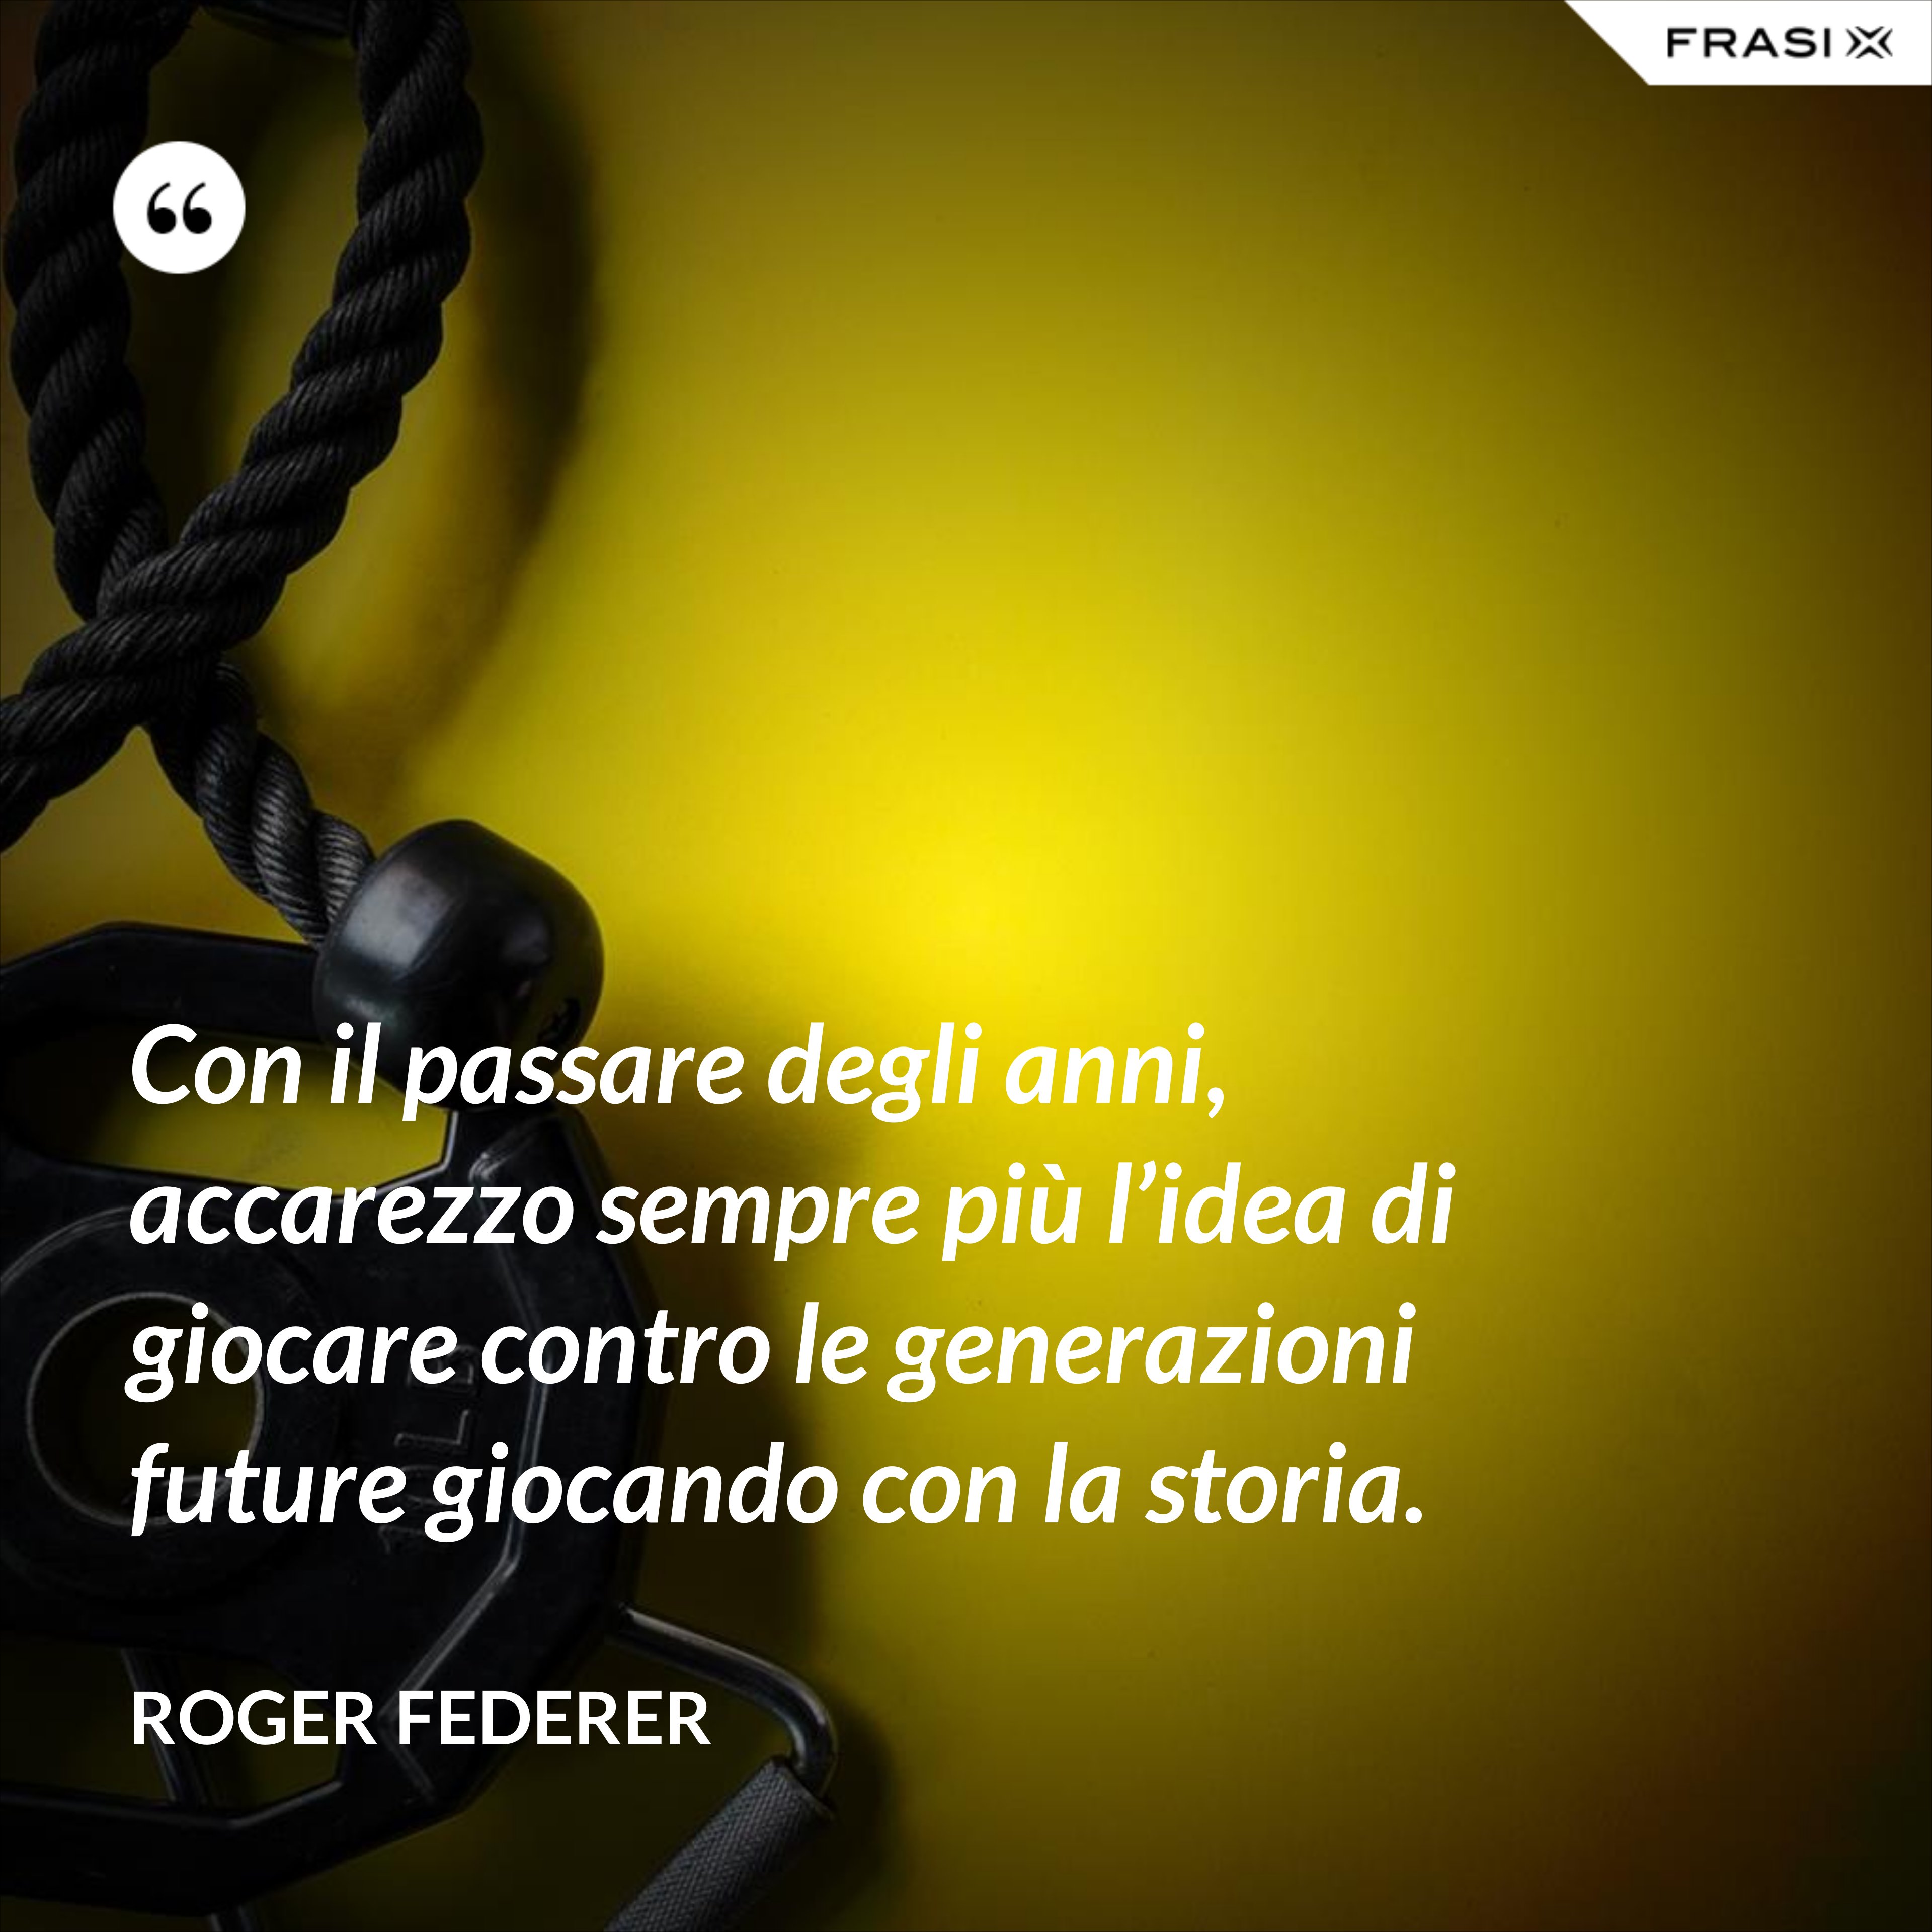 Con il passare degli anni, accarezzo sempre più l’idea di giocare contro le generazioni future giocando con la storia. - Roger Federer